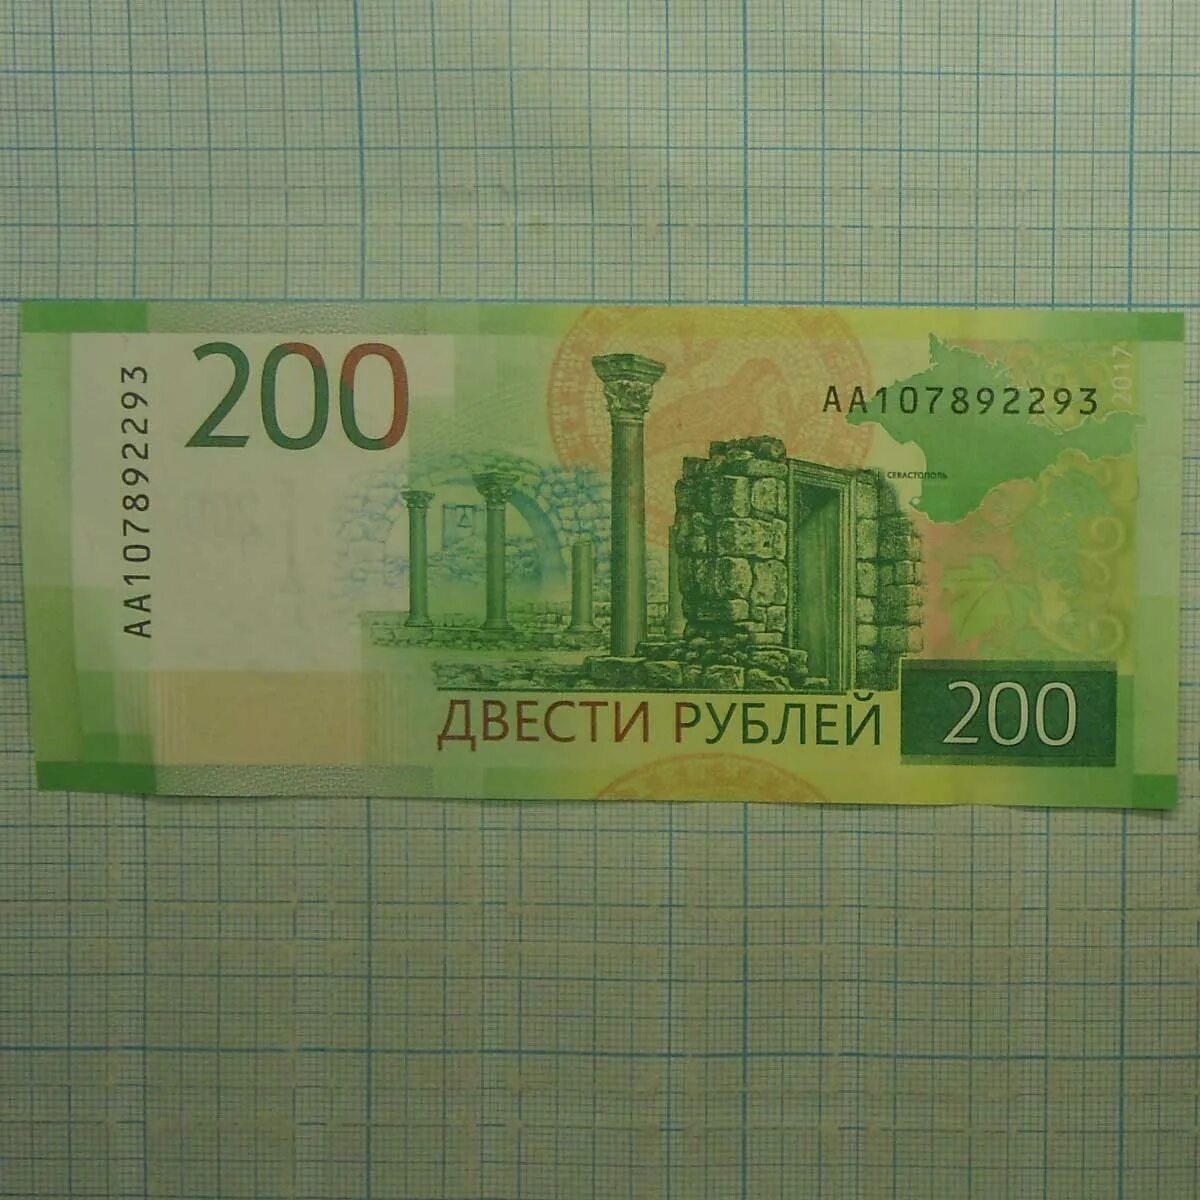 22 200 в рублях